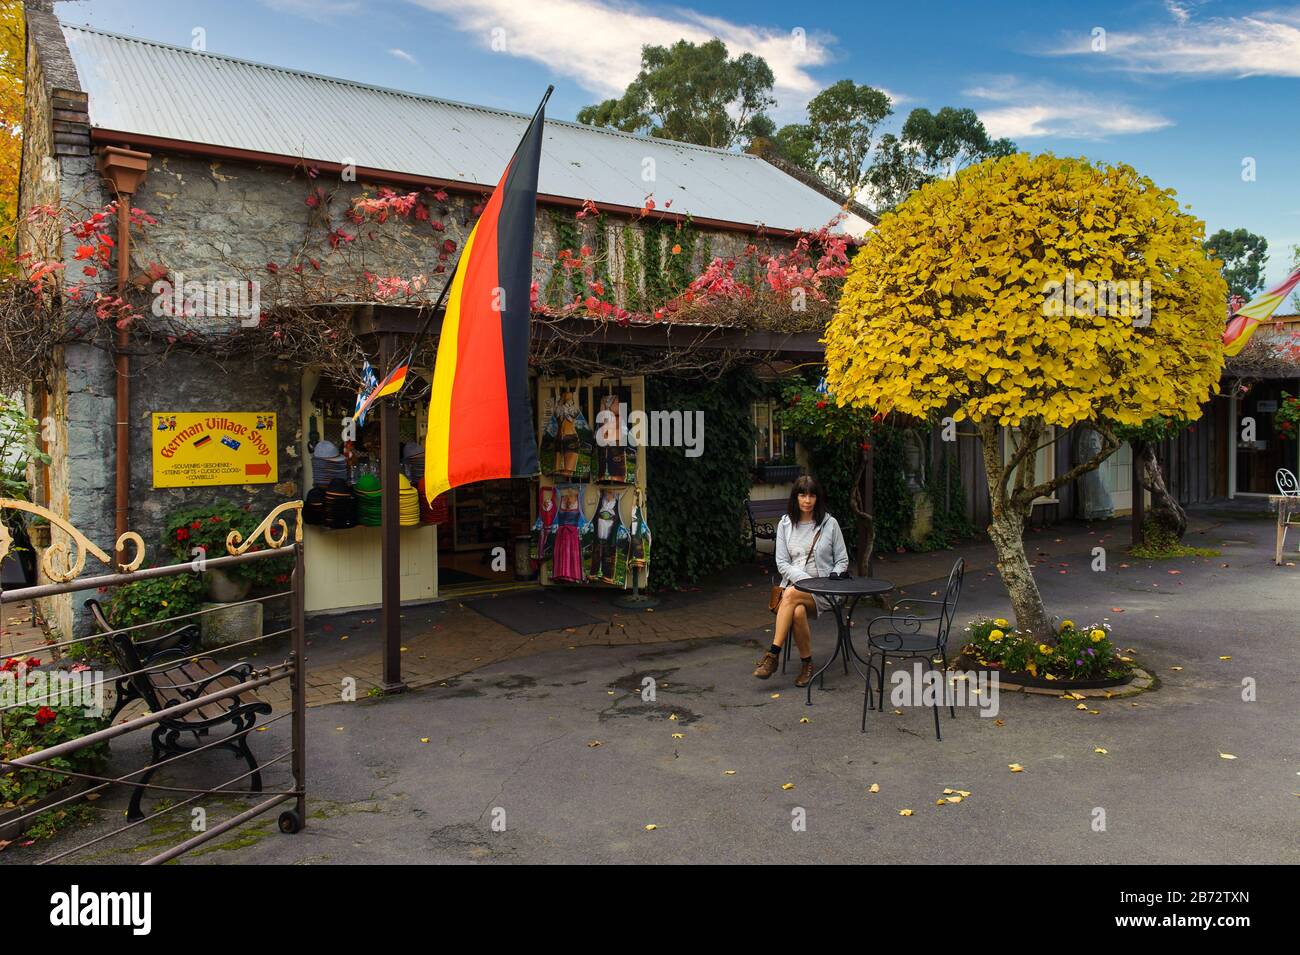 Ein weiblicher Tourist sitzt vor einem alten Steinladen mit deutscher Flagge und wartet auf ihren Kaffee, der von der Herbstflora umgeben ist Stockfoto